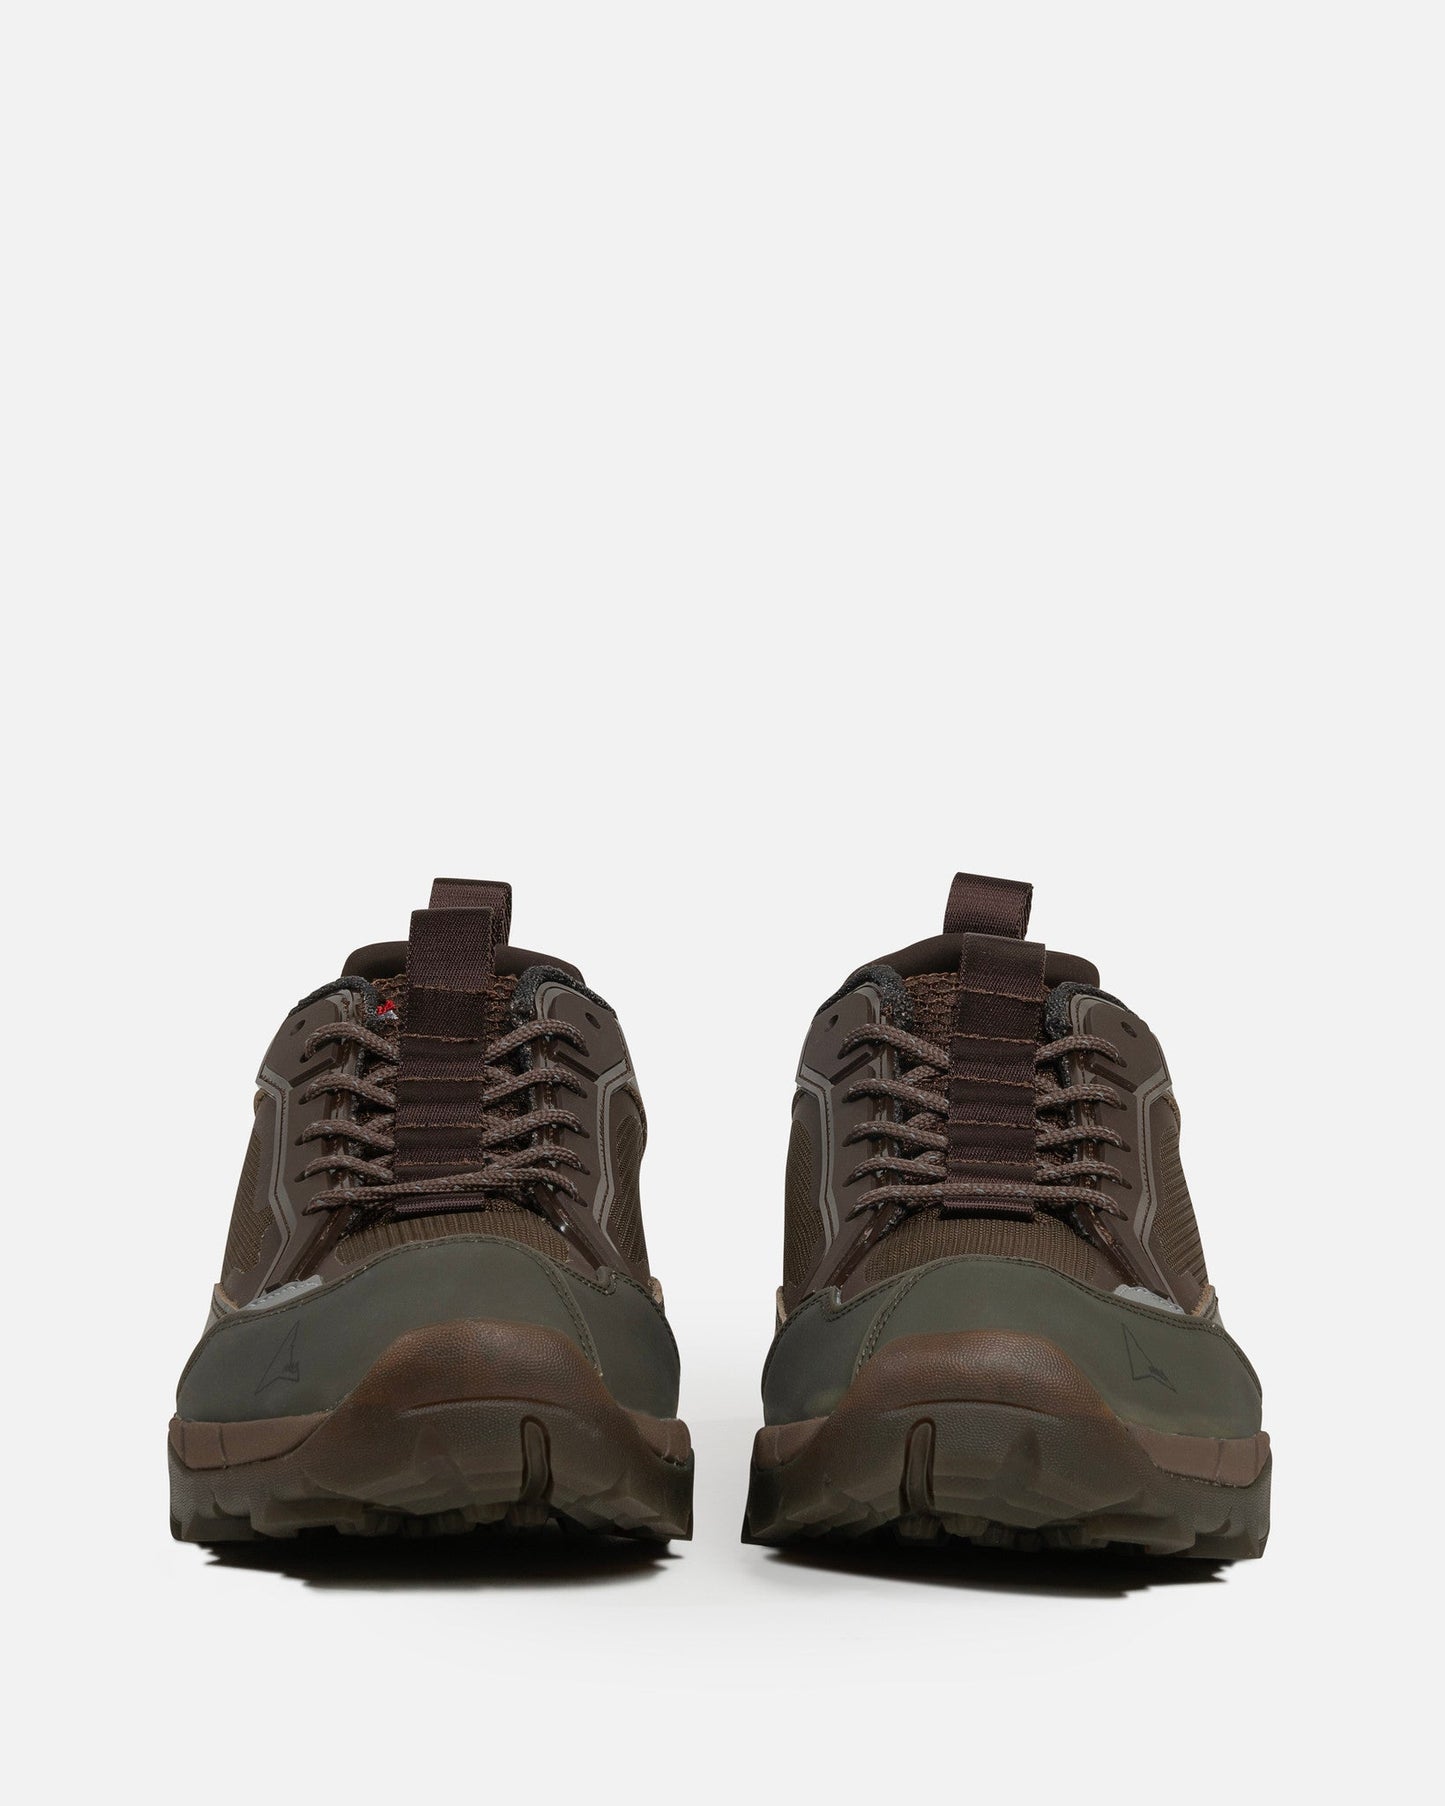 Roa Men's Shoes Lhakpa in Brown Military